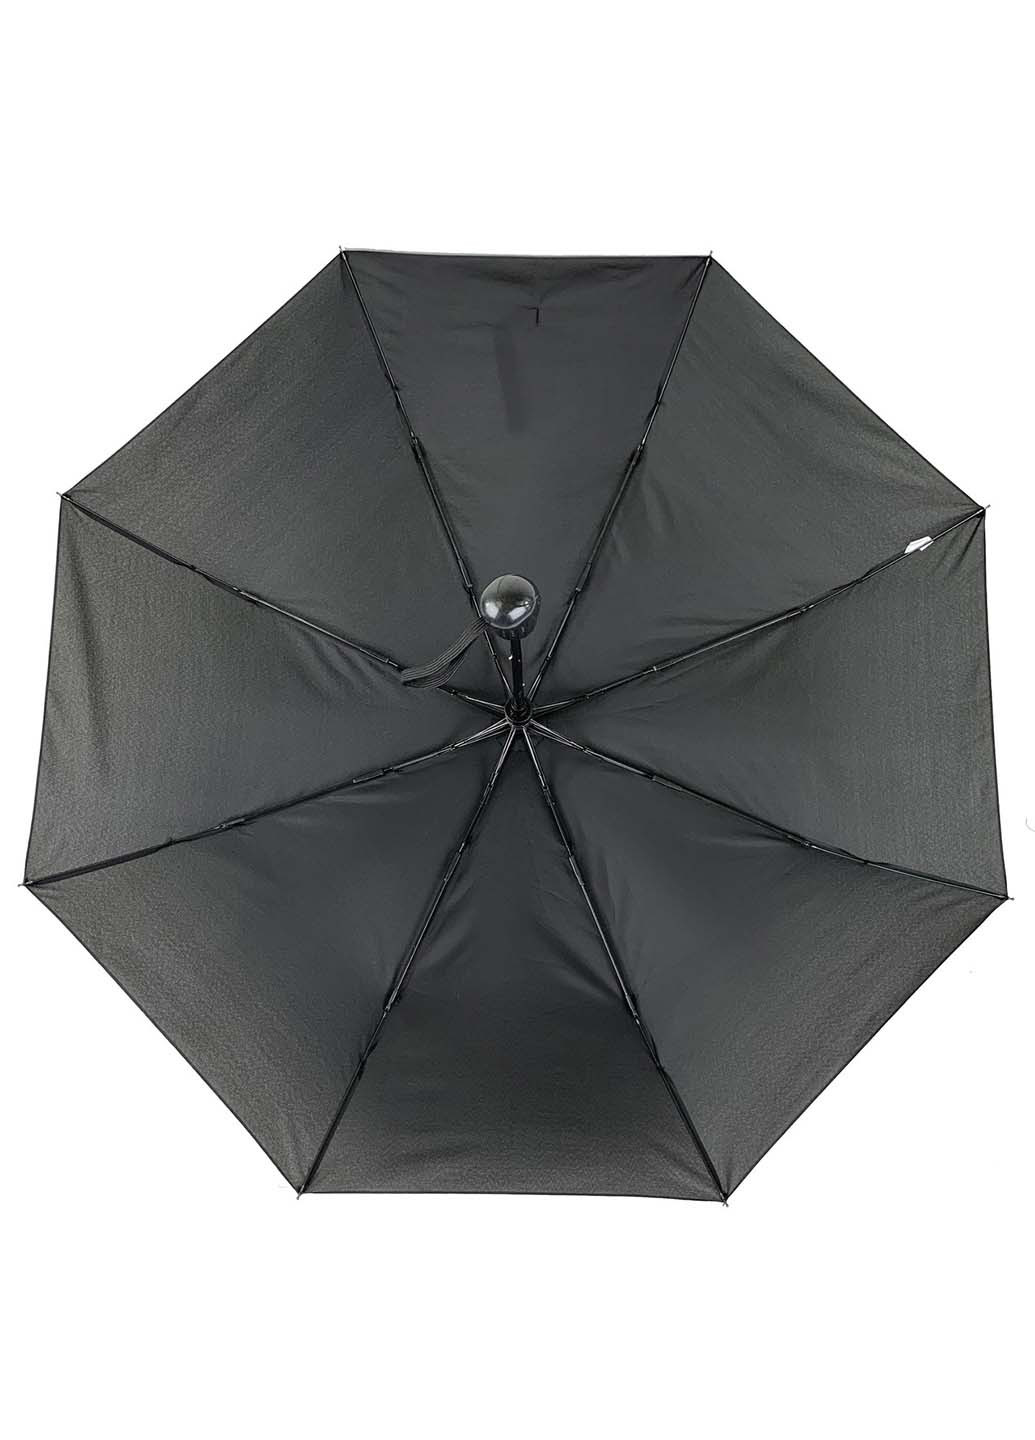 Зонт Max 2010-1 складной чёрный